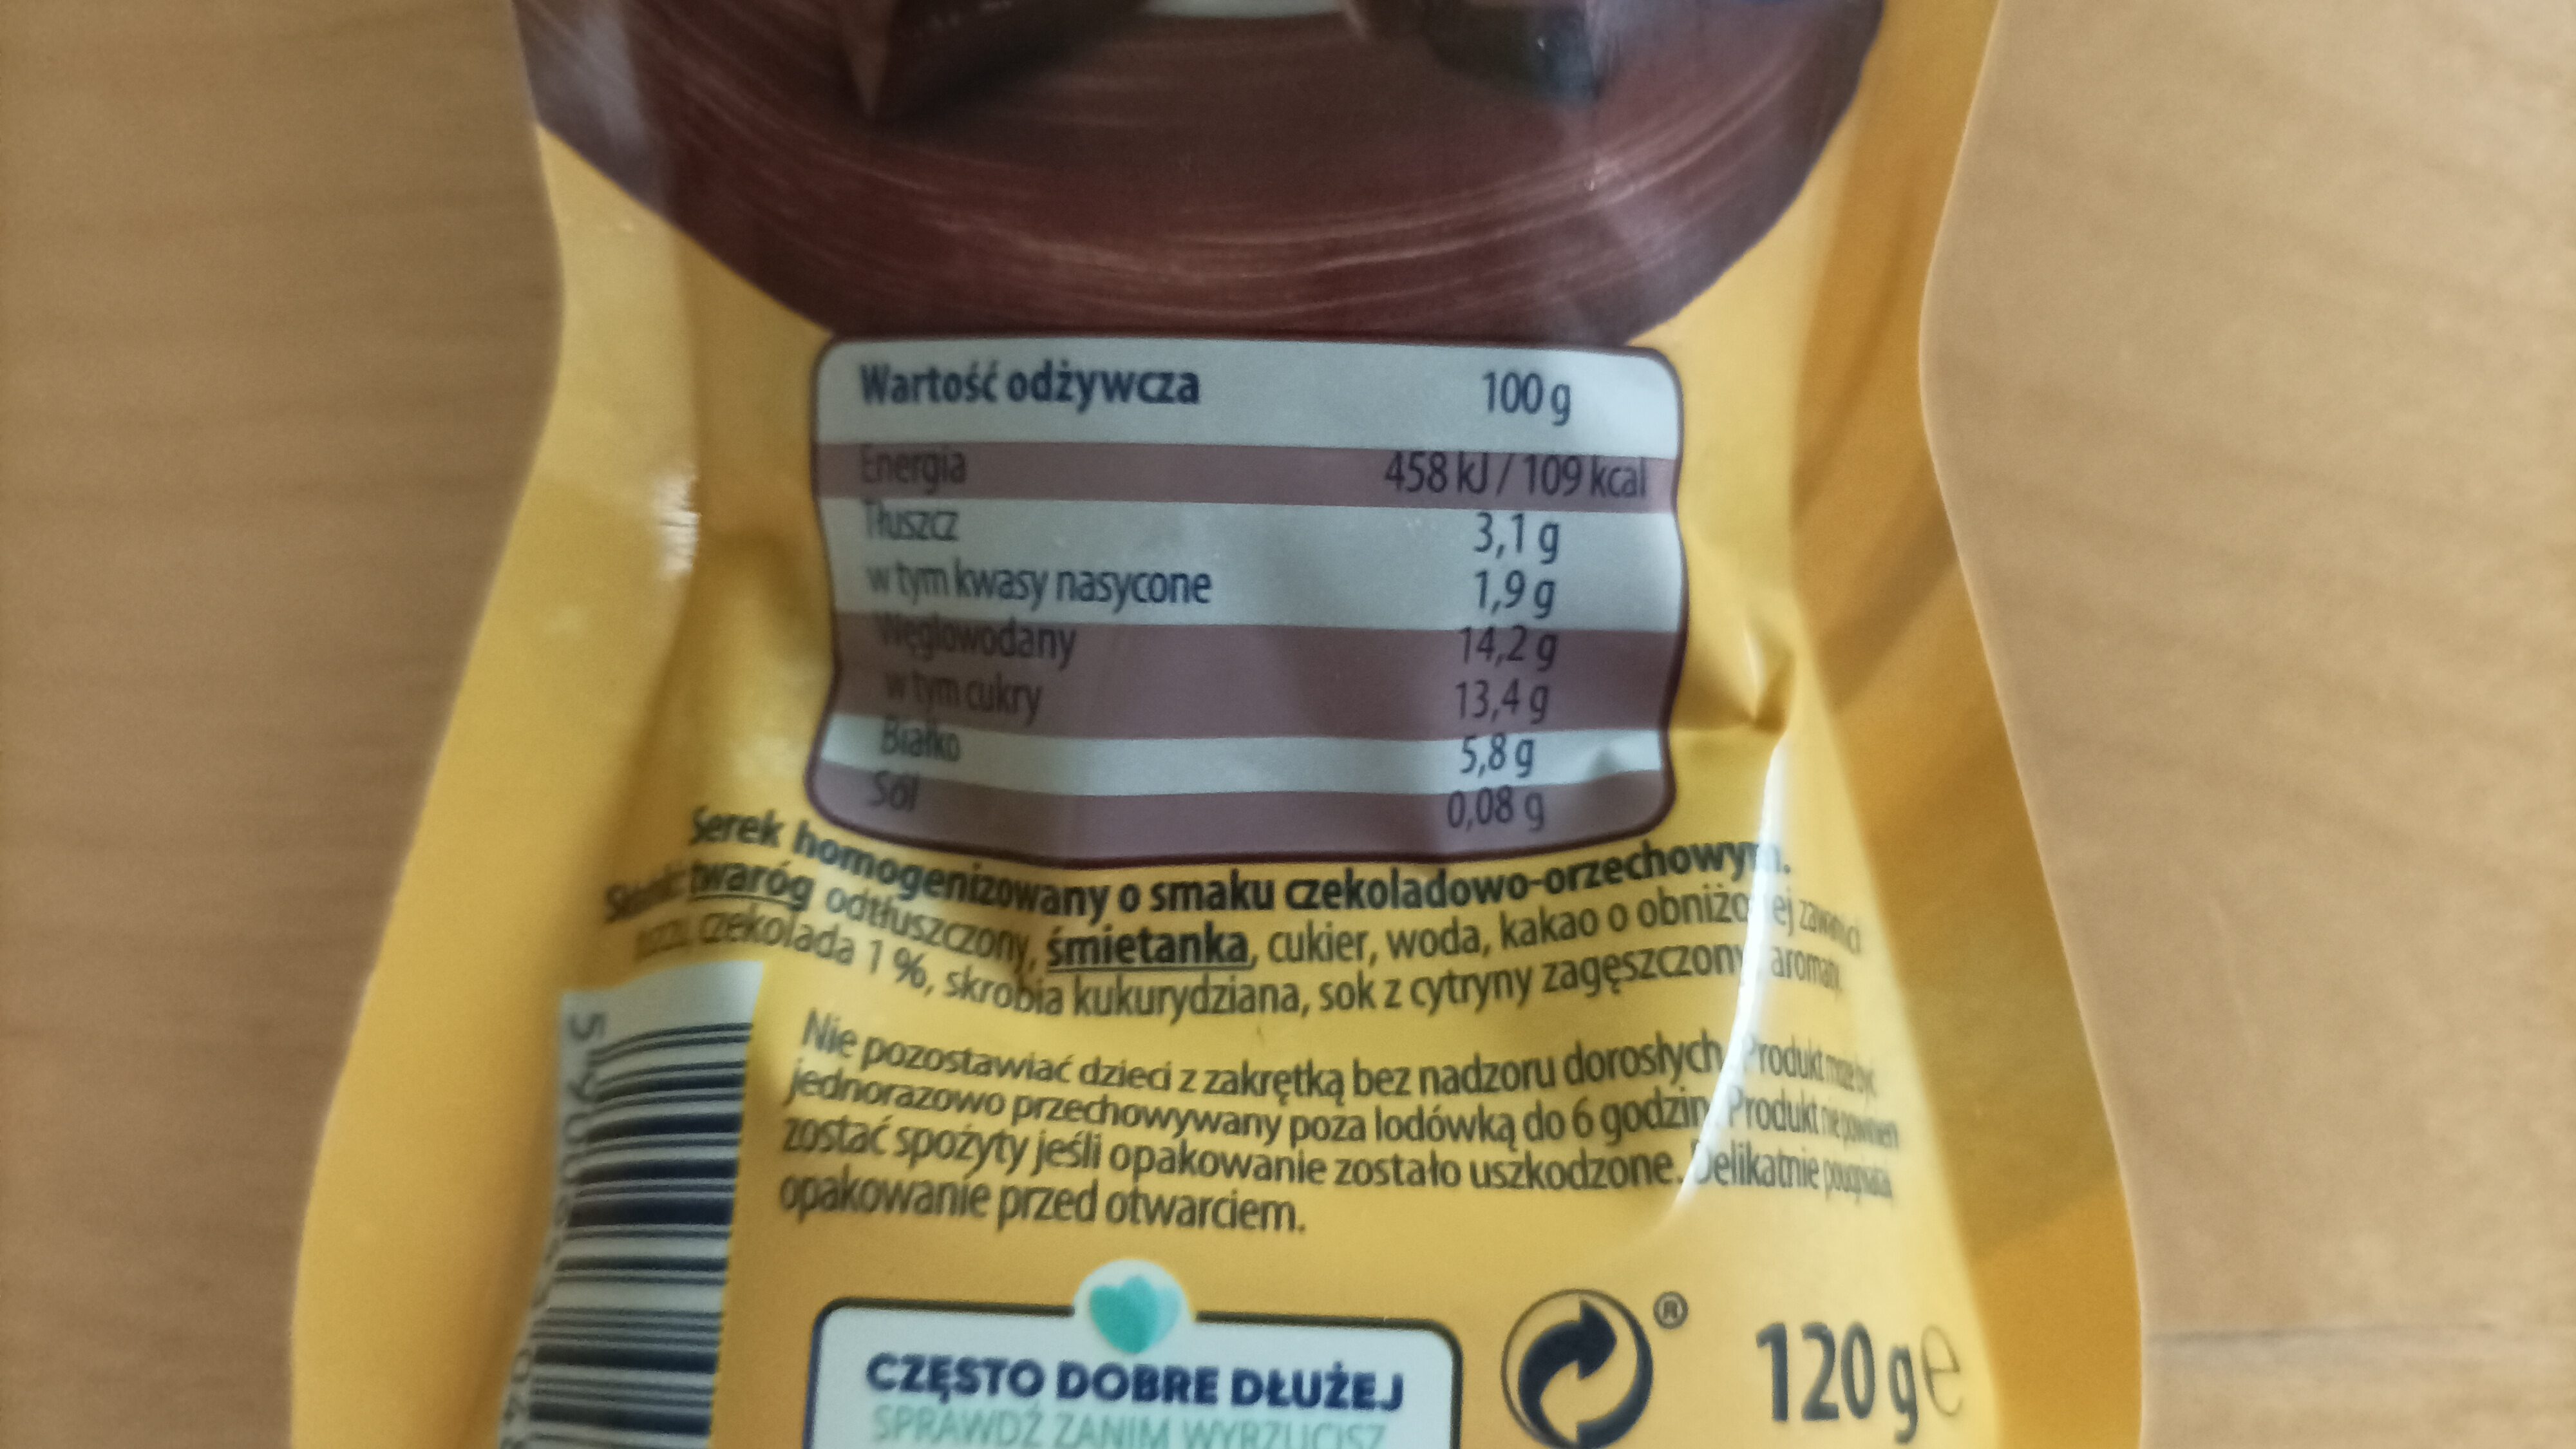 Danio o smaku czekoladowo-orzechowym - Ingredients - pl